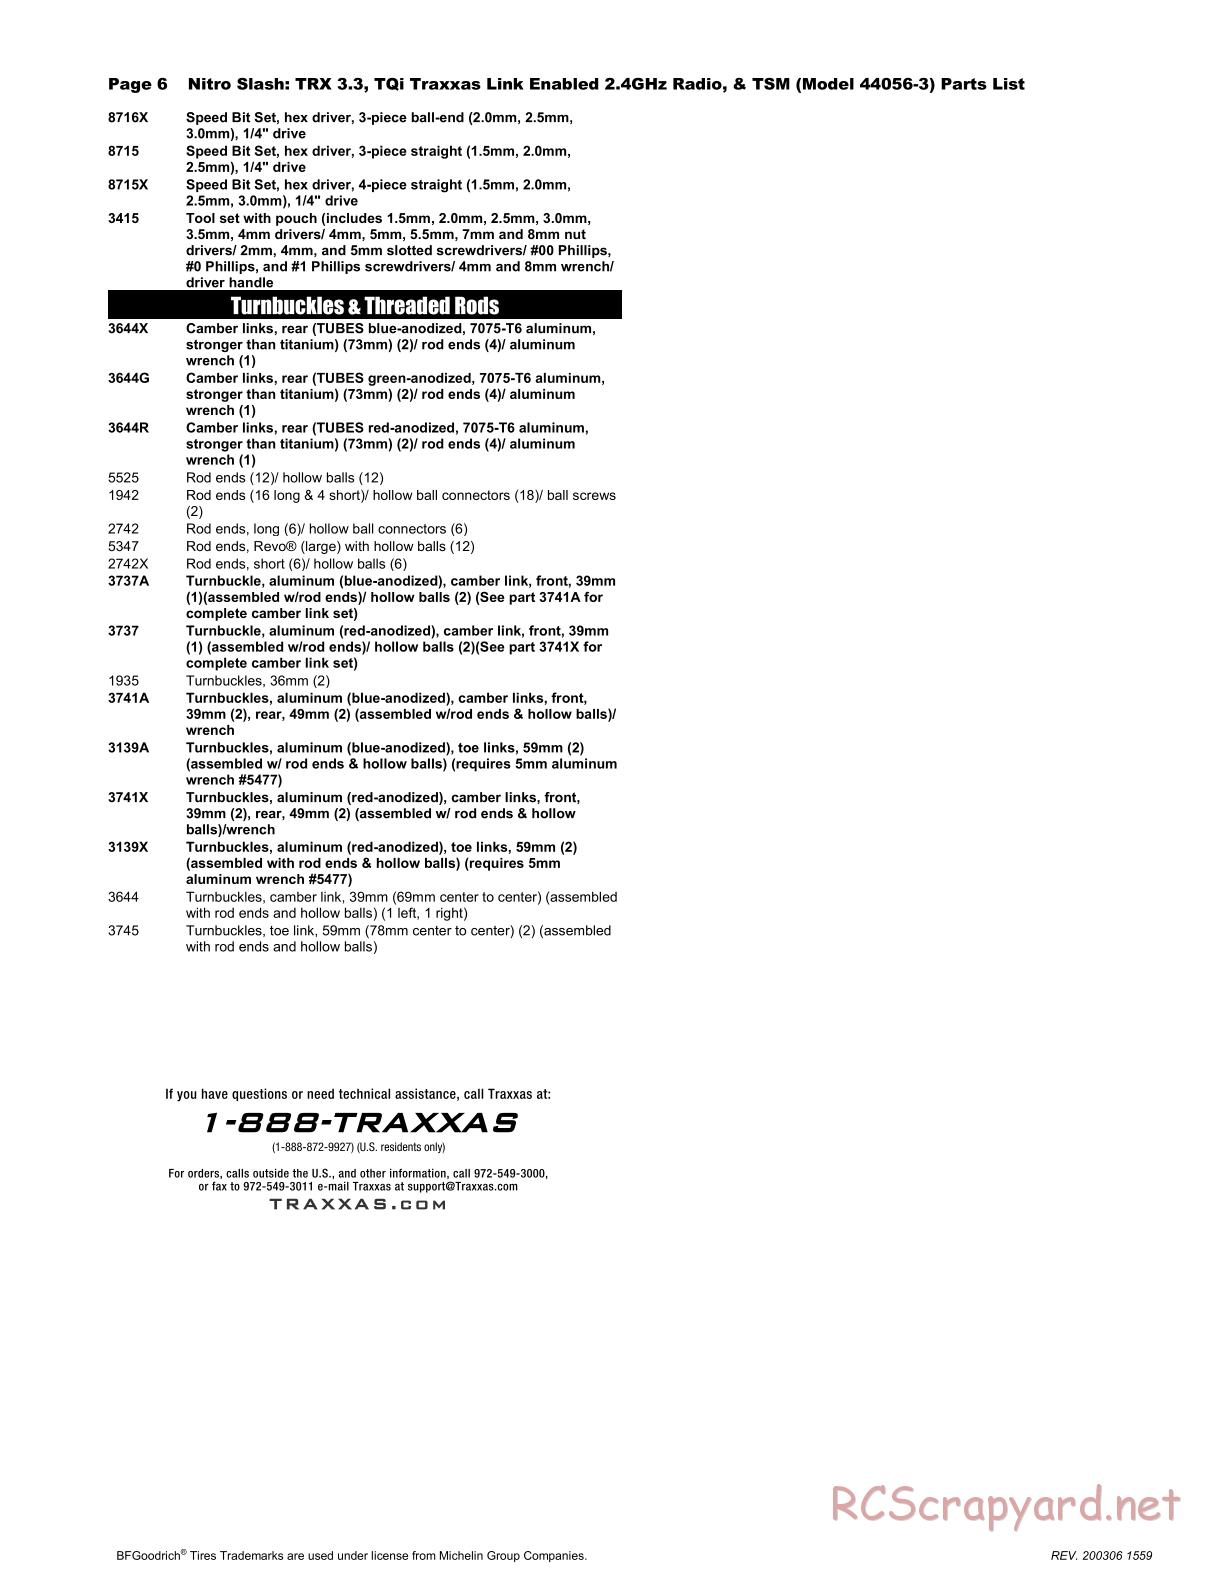 Traxxas - Nitro Slash TSM (2015) - Parts List - Page 6